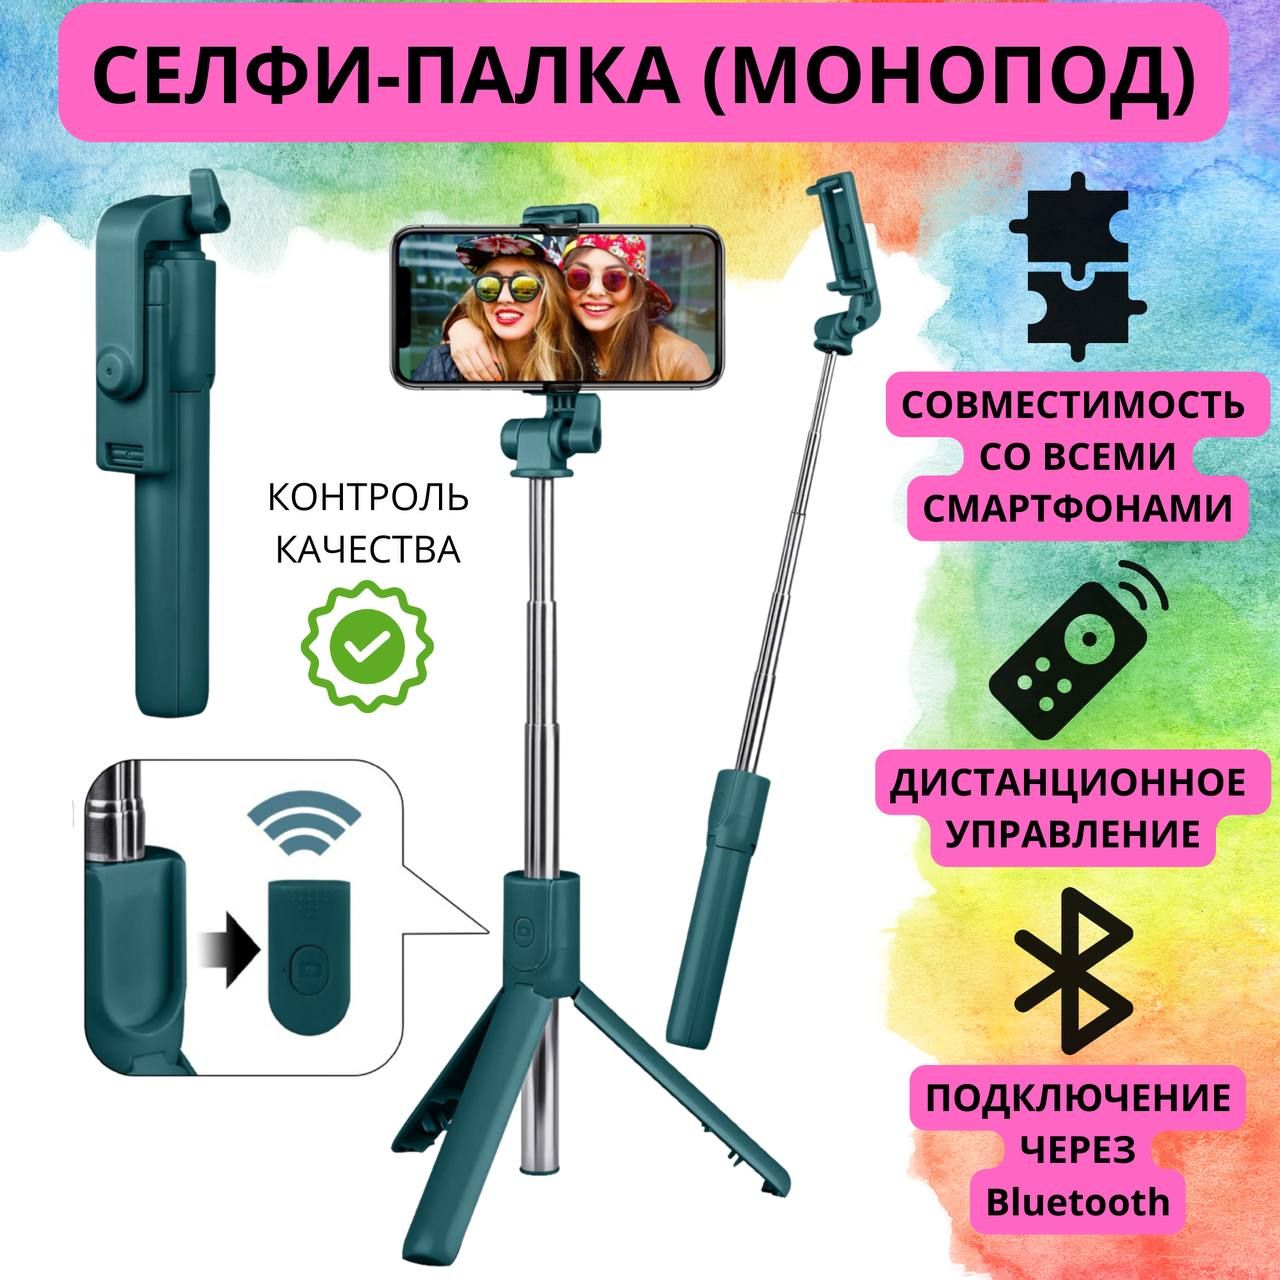 Монопод Power Bank Омск Аксессуары GoPro - купить в Омске